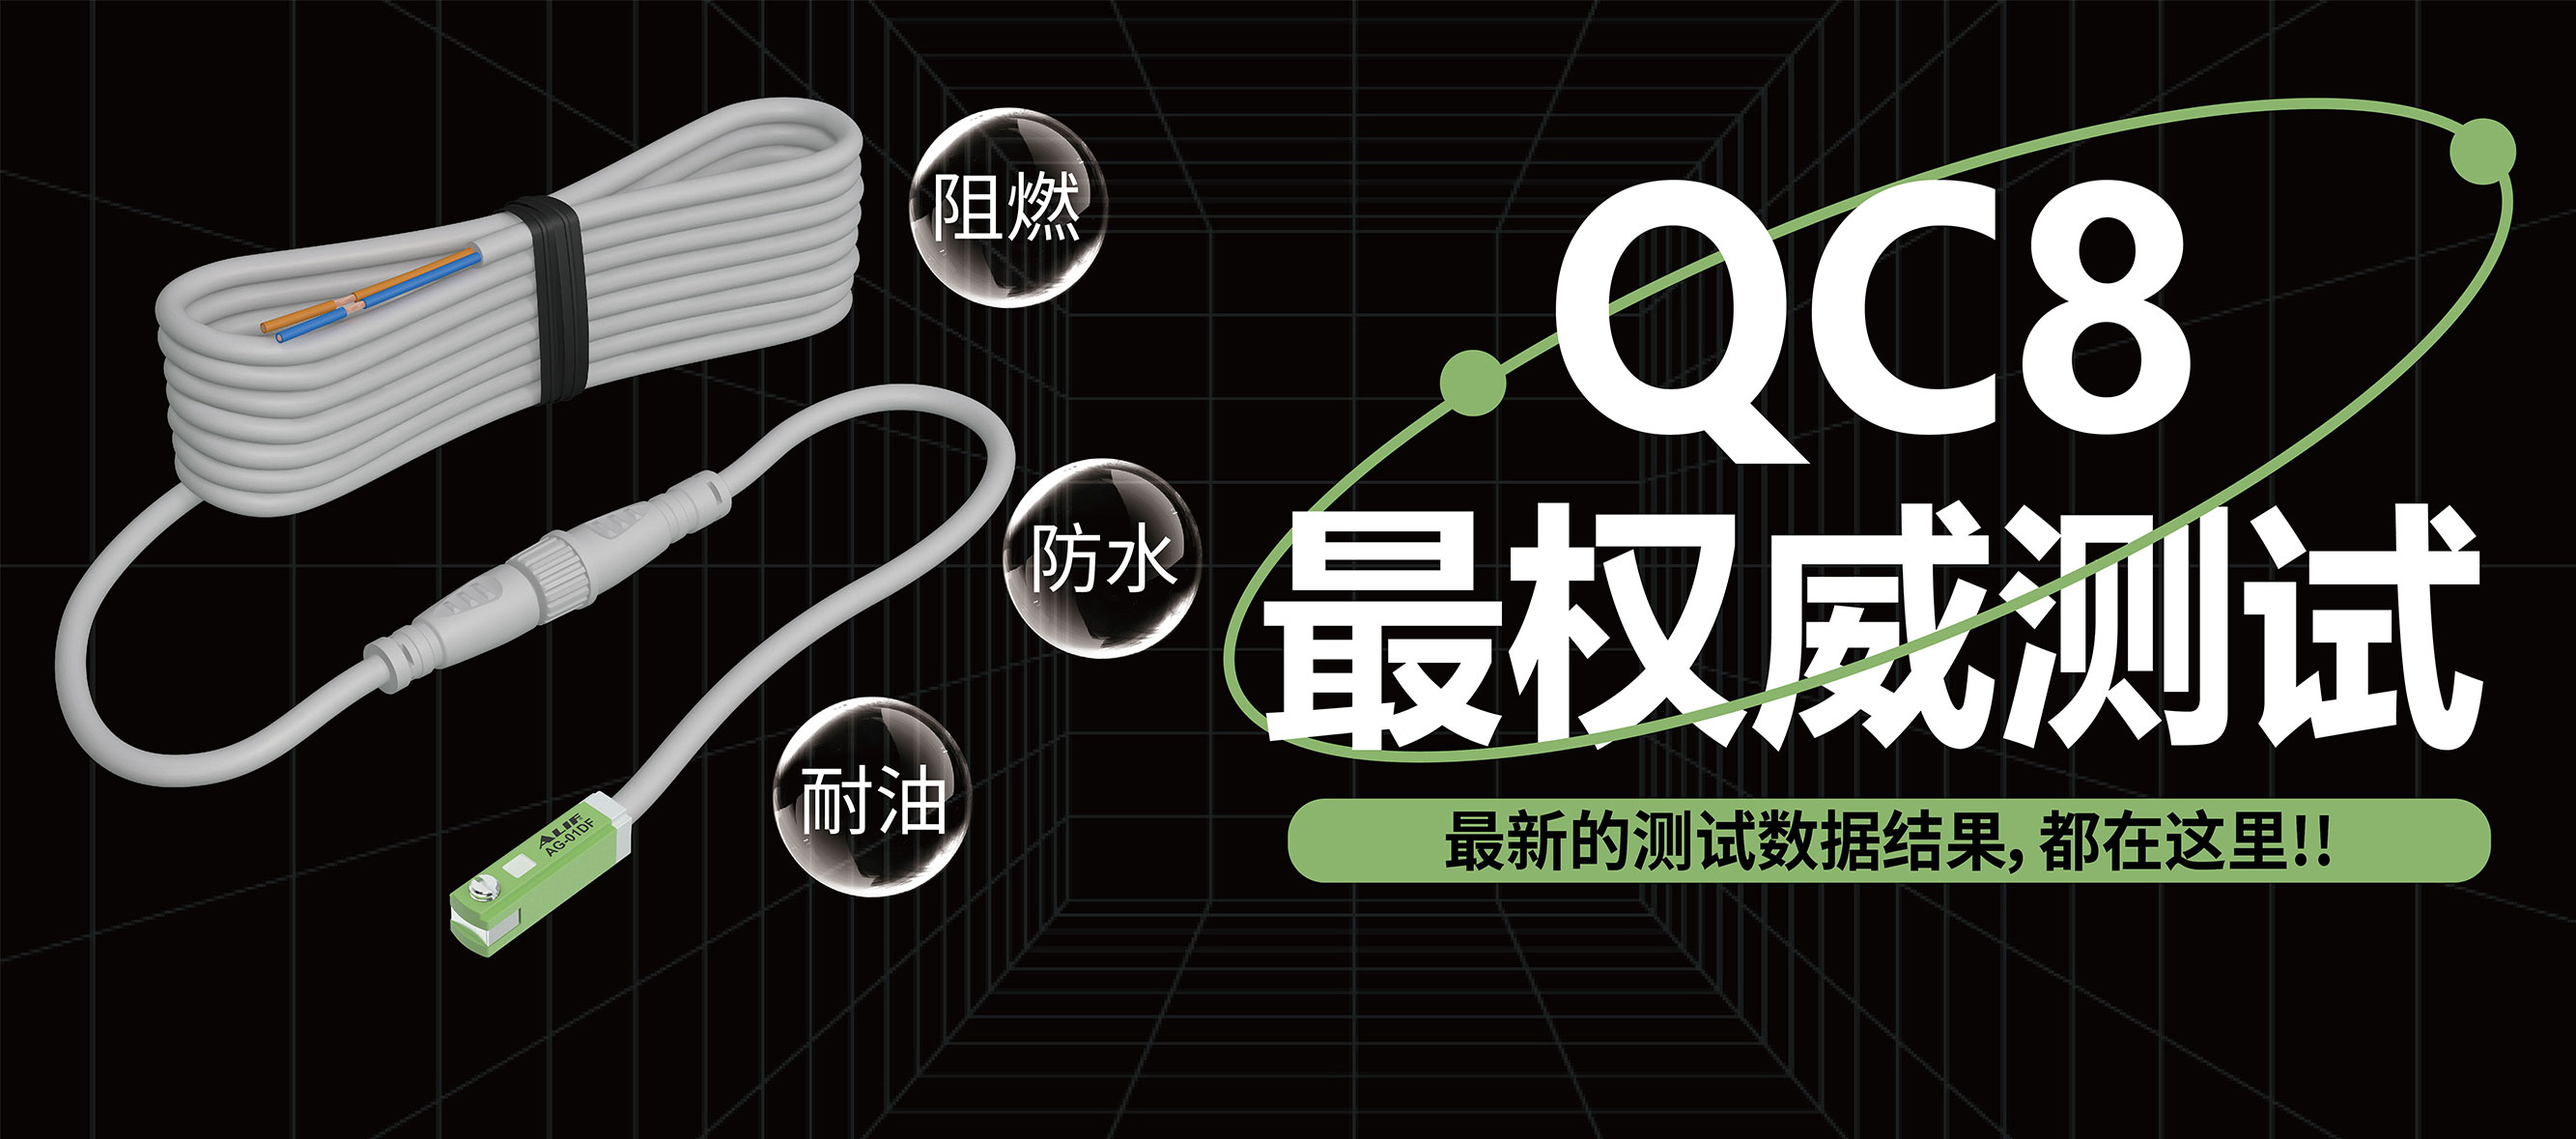 全新「QC8快速接頭」測試數據大公開